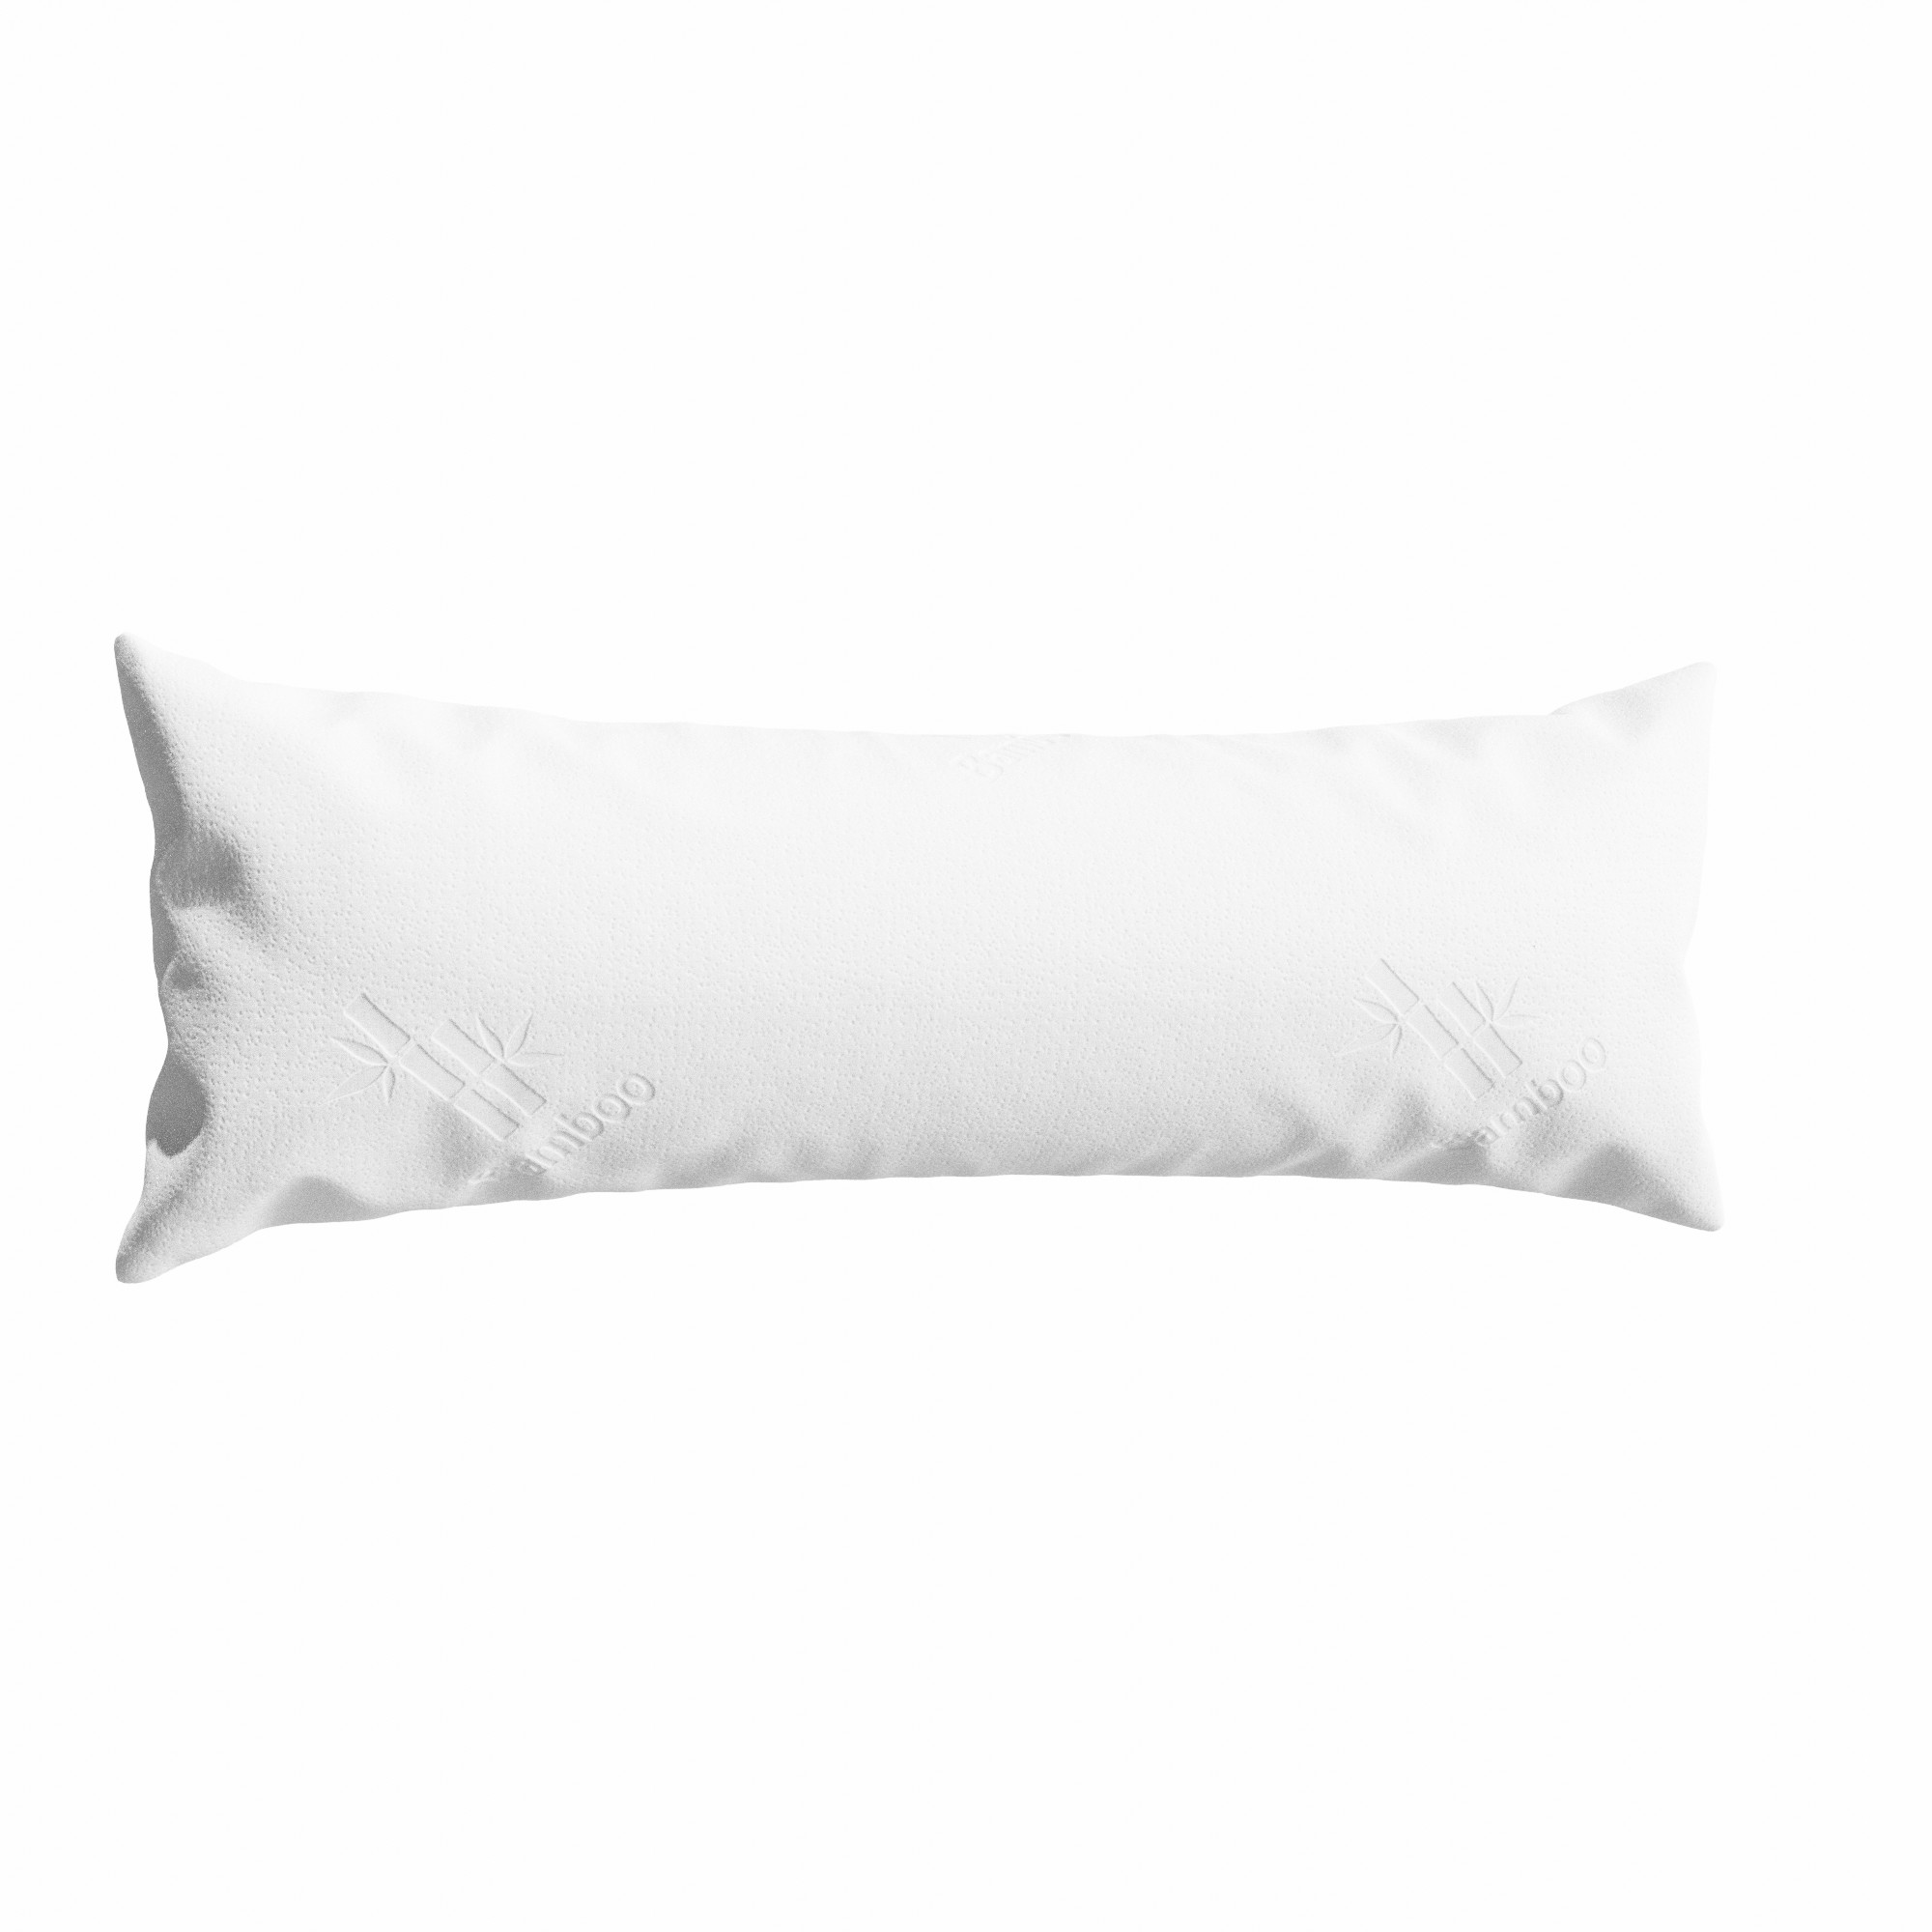 Shredded Memory Foam Body Pillow, Extra Large, Ultra Plush, White